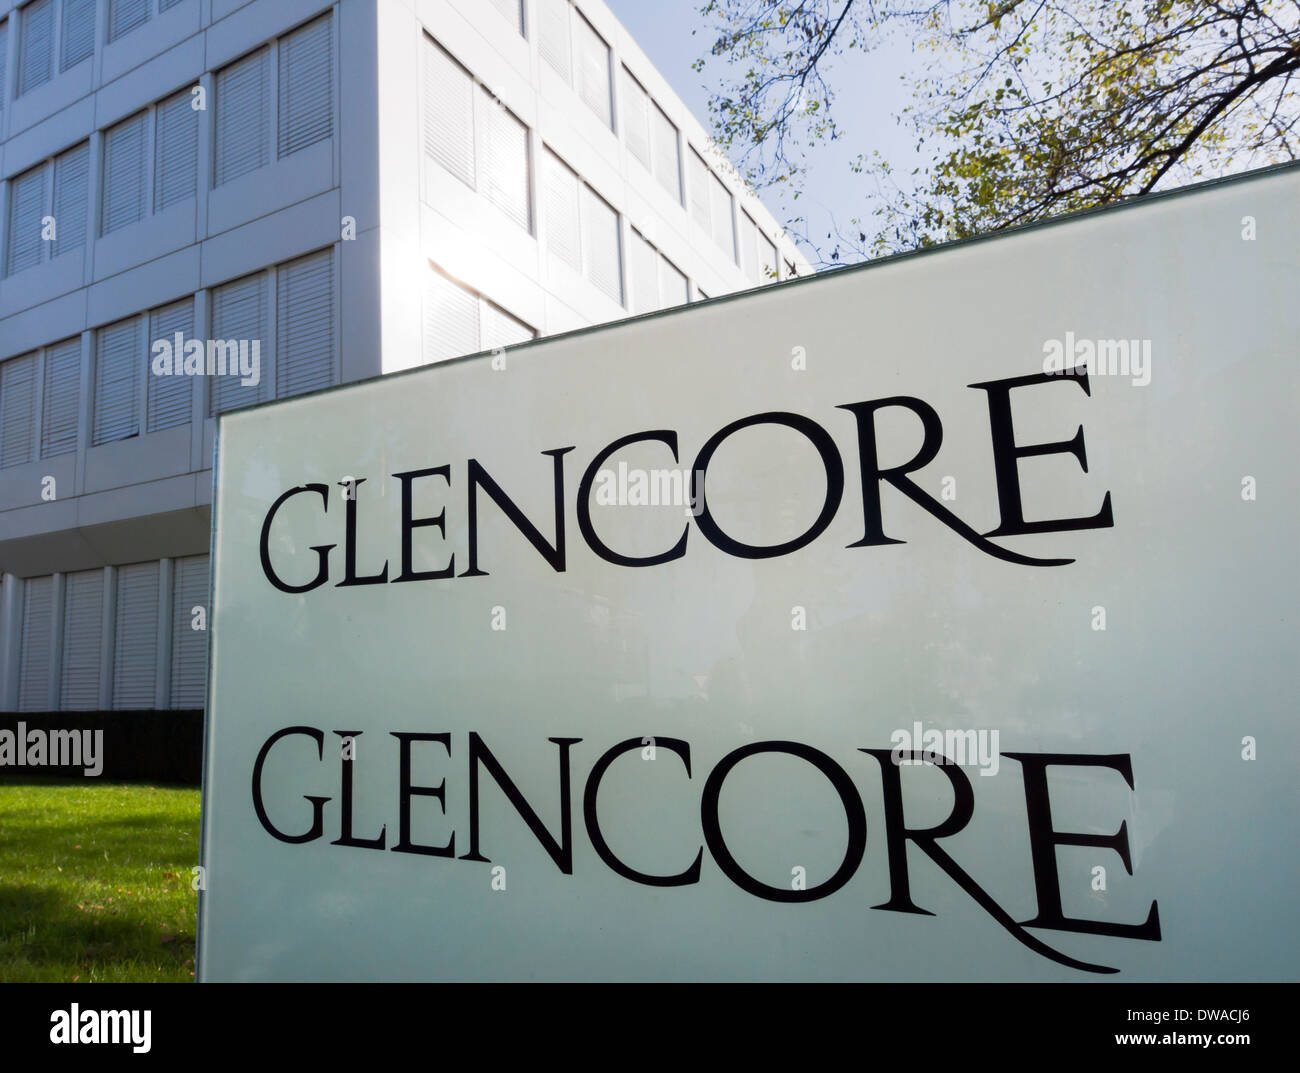 Ingresso e la sede centrale della società di Glencore Xstrata, il più grande del mondo di commodities trading firm, in Zug, Svizzera Foto Stock